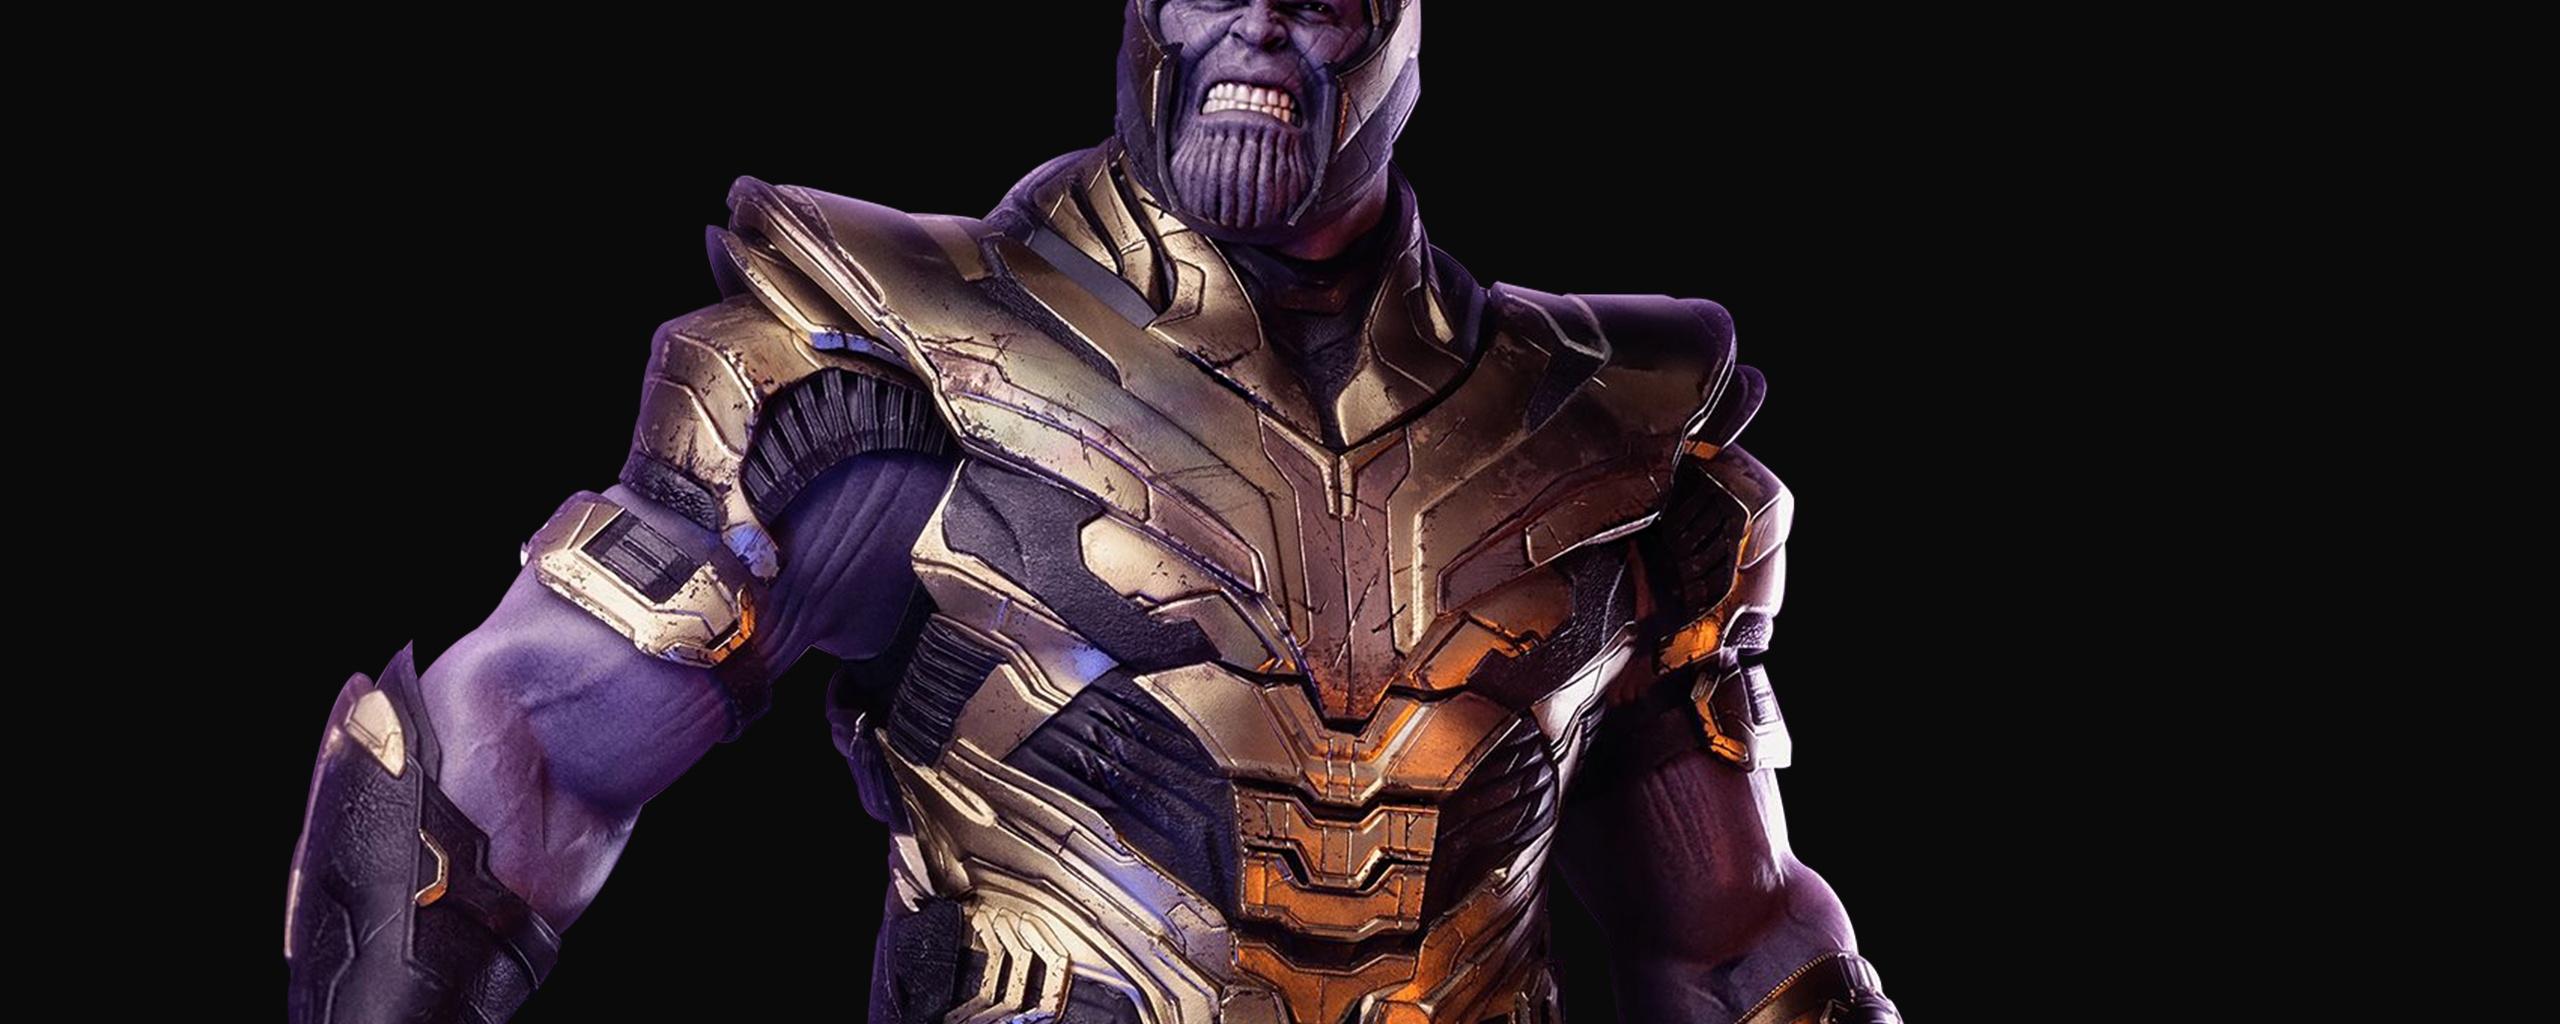 Downaload Thanos, Avengers: Endgame, movie, villain wallpaper